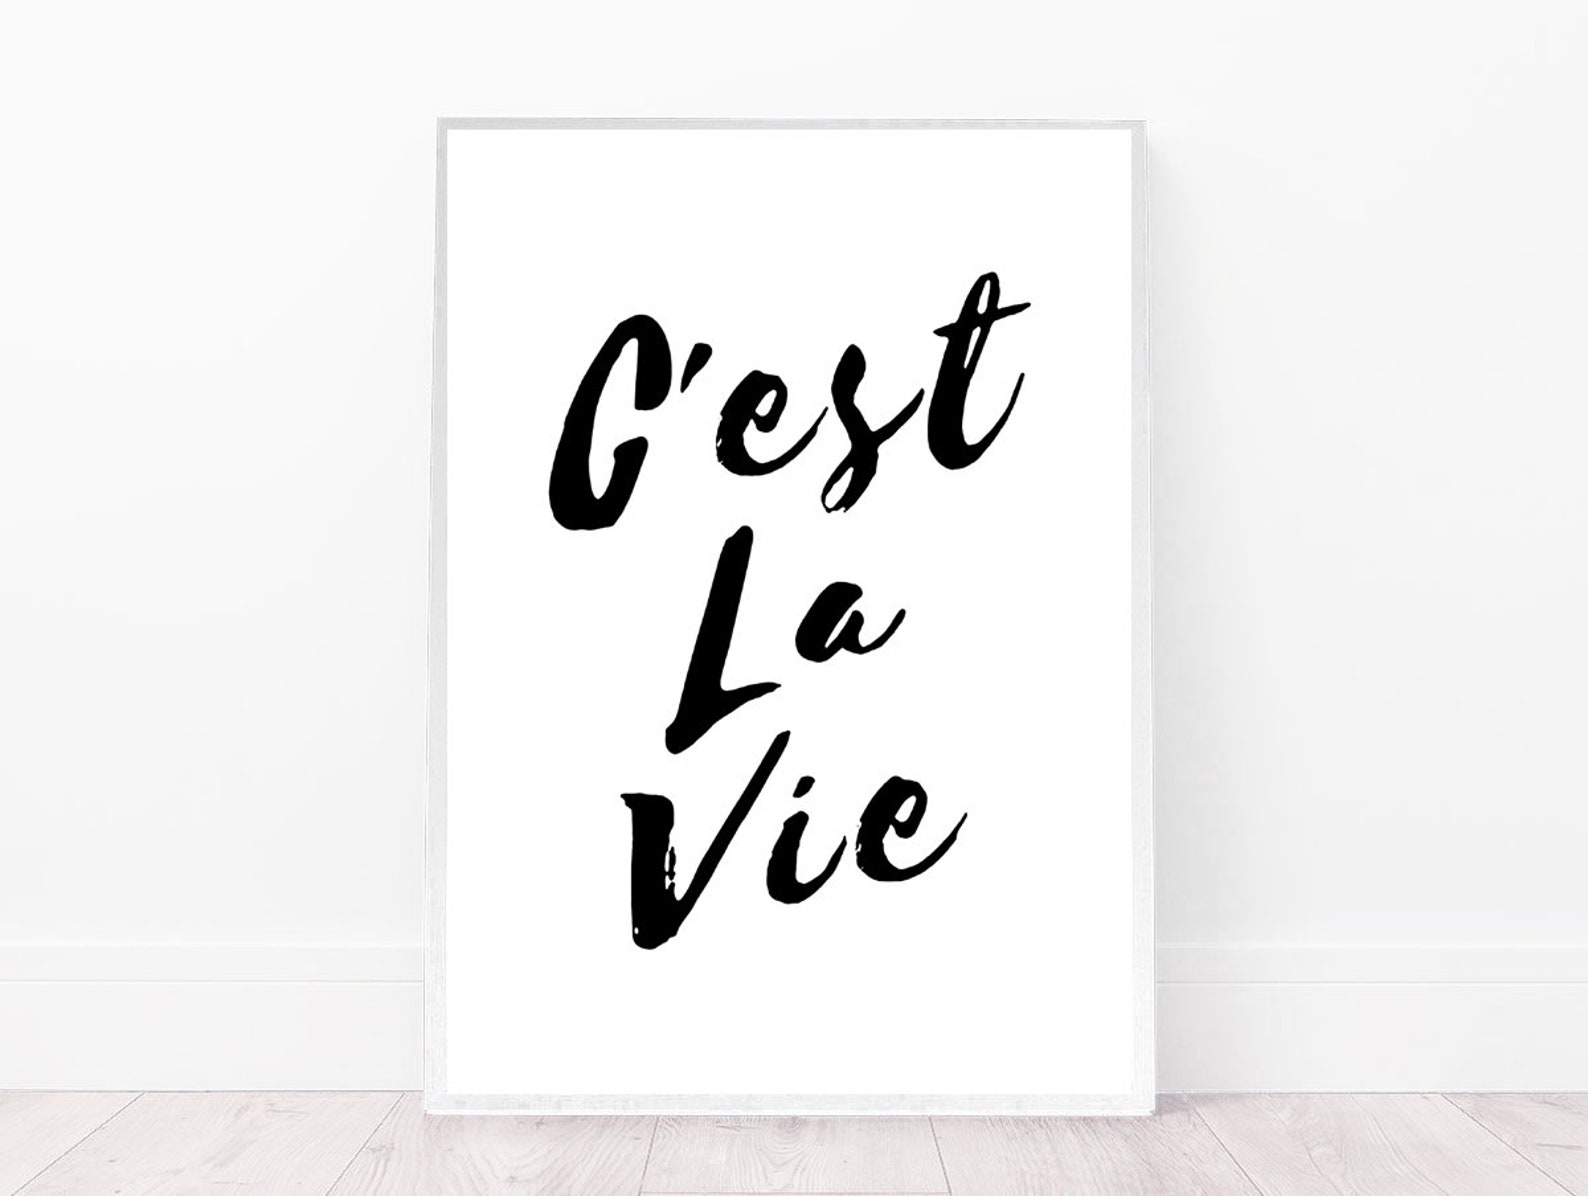 C'est la vie. C`est la vie эскиз. C'est la vie перевод. C' est la vie картинки в рамке. Се ля ви на русском